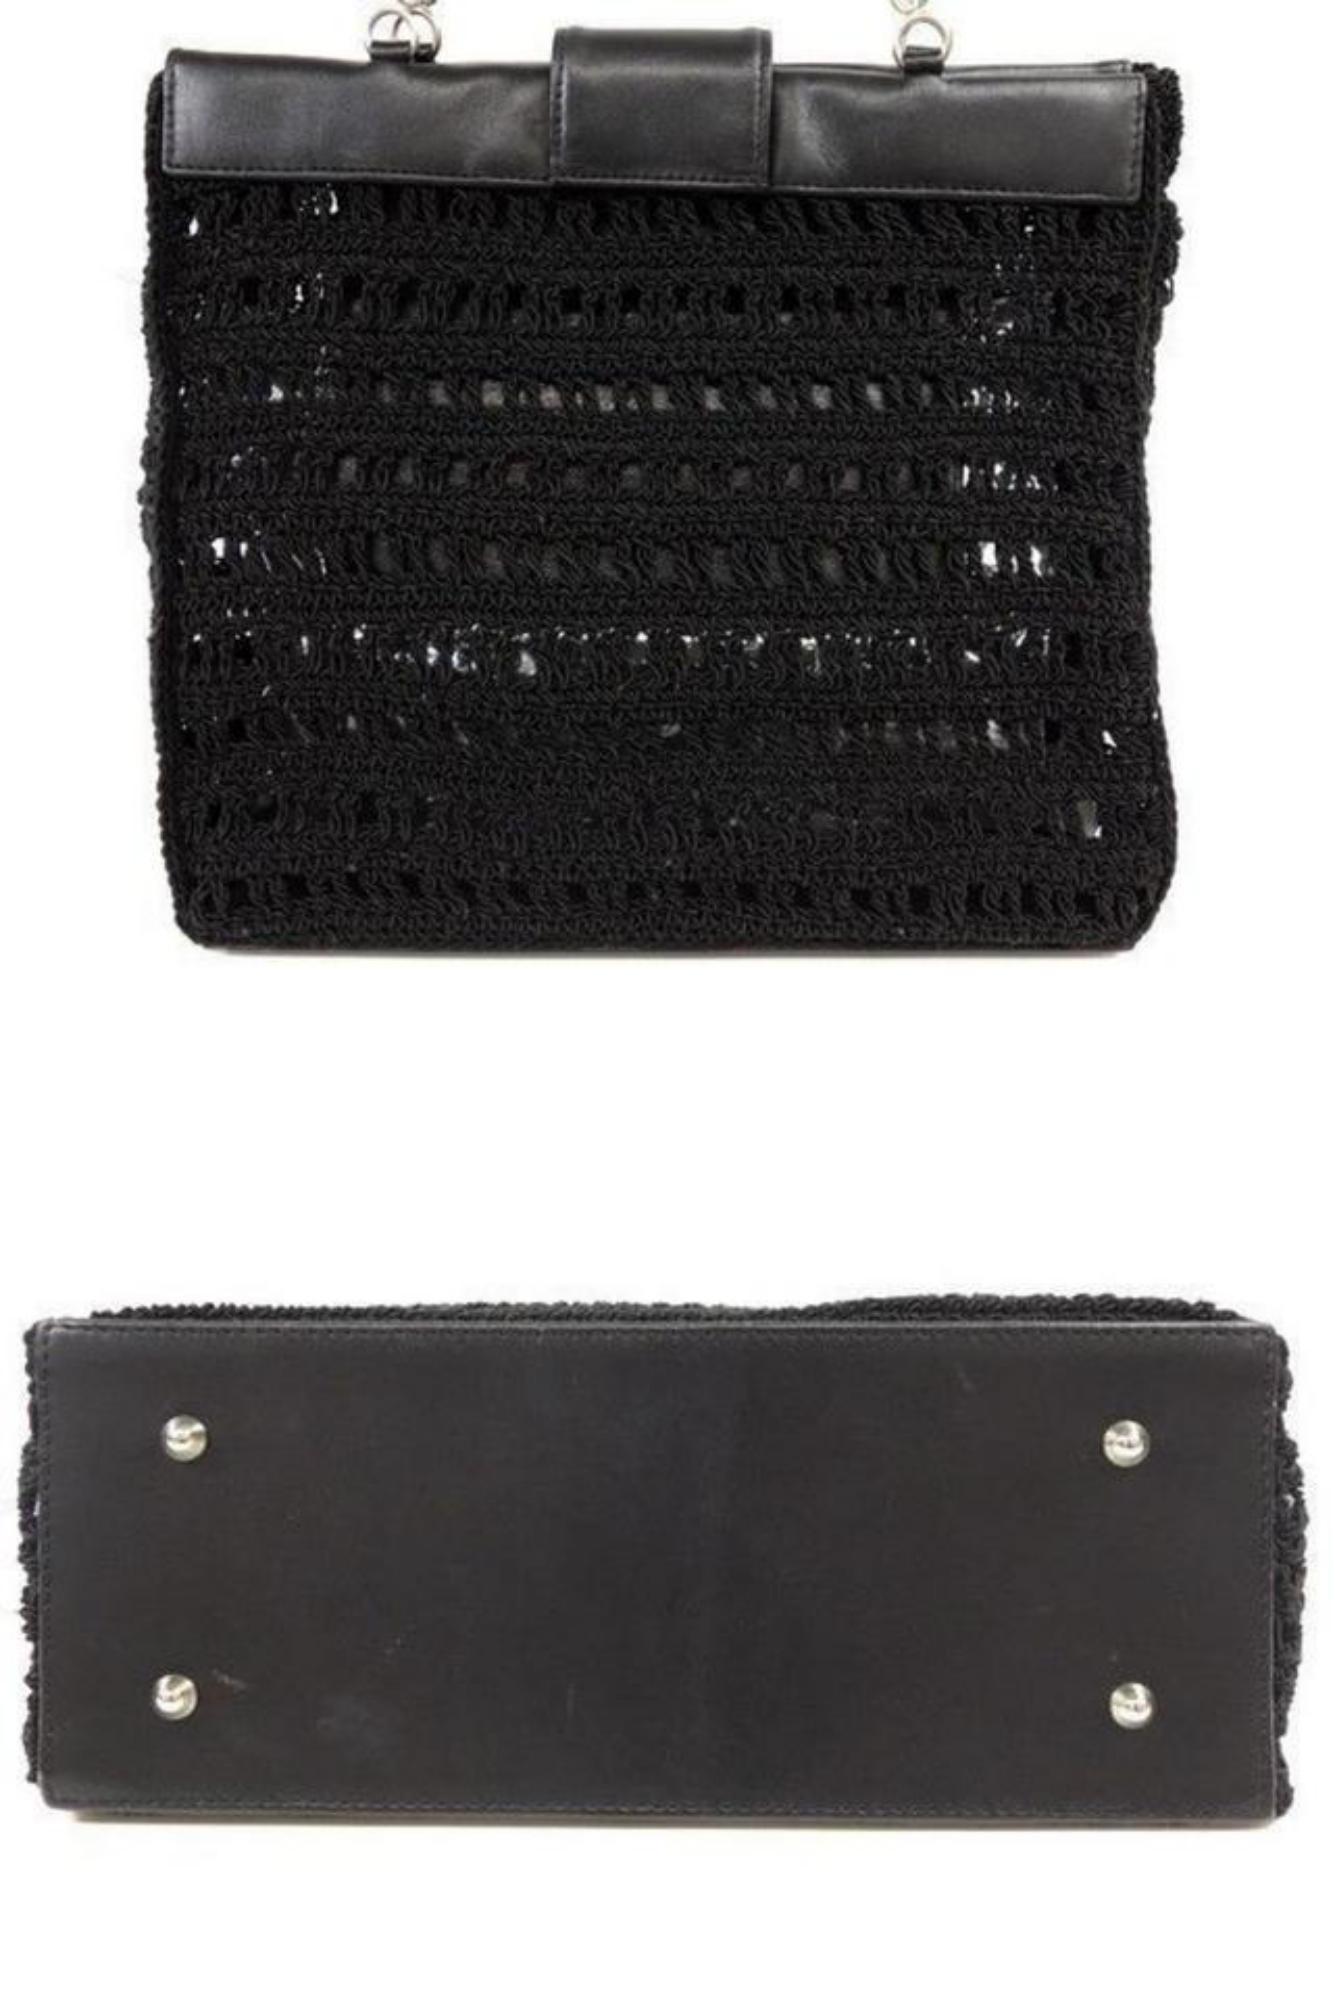 Chanel Supermodel (Ultra Rare) Woven Mesh Chain Tote 230512 Black Shoulder Bag For Sale 7